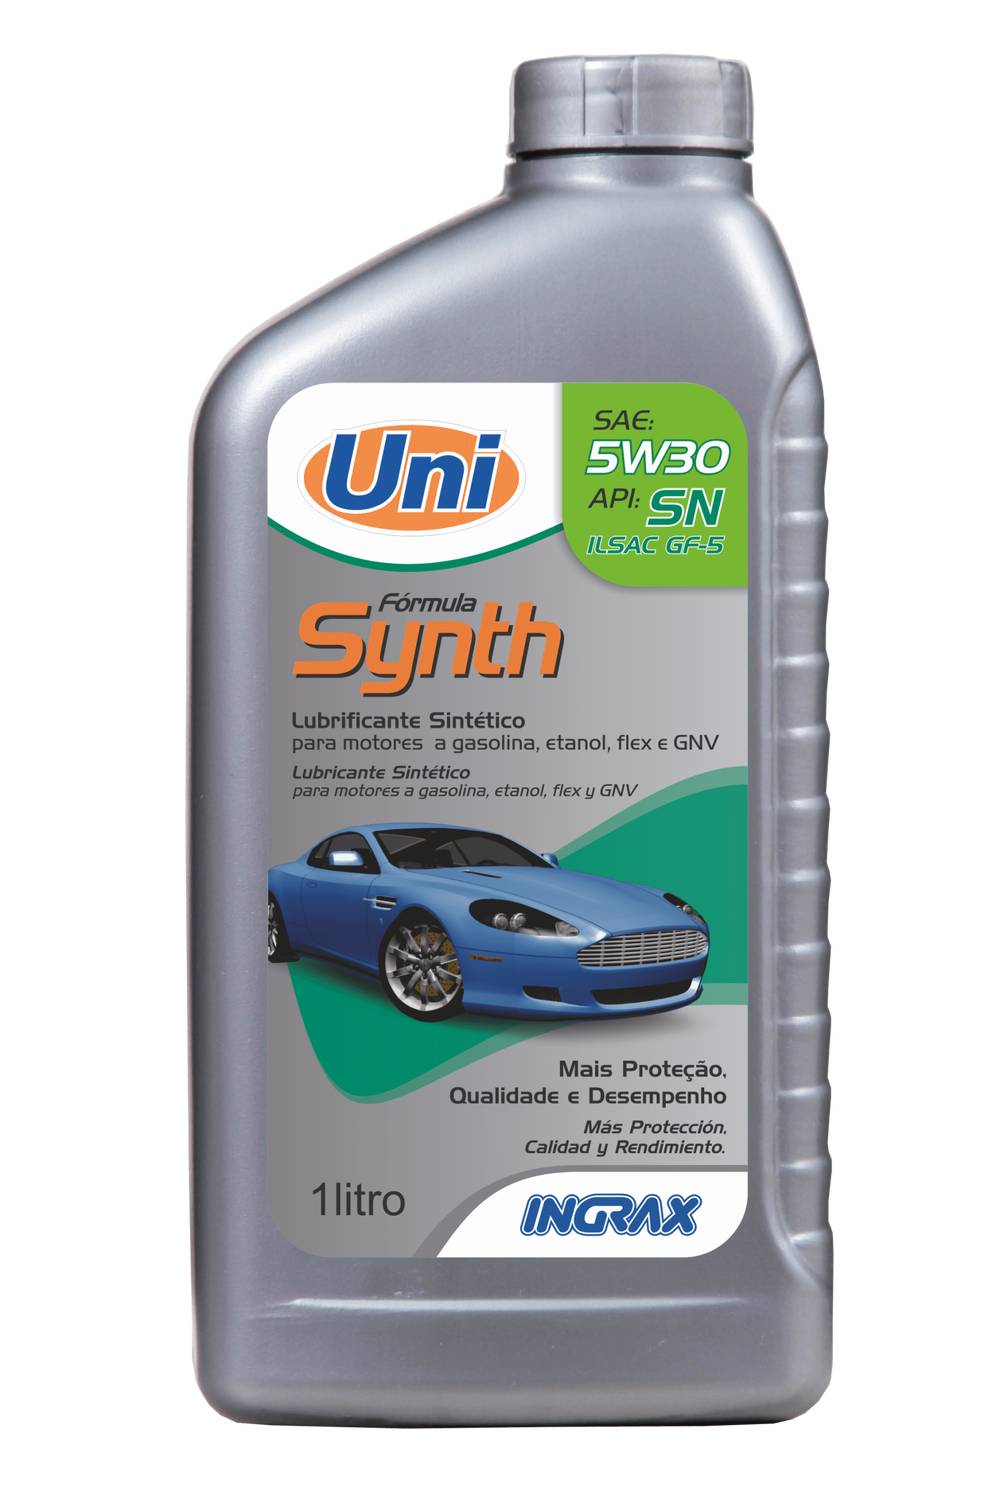 Ingrax lubrificante uni fórmula tech semi sae 5w30 (1l)